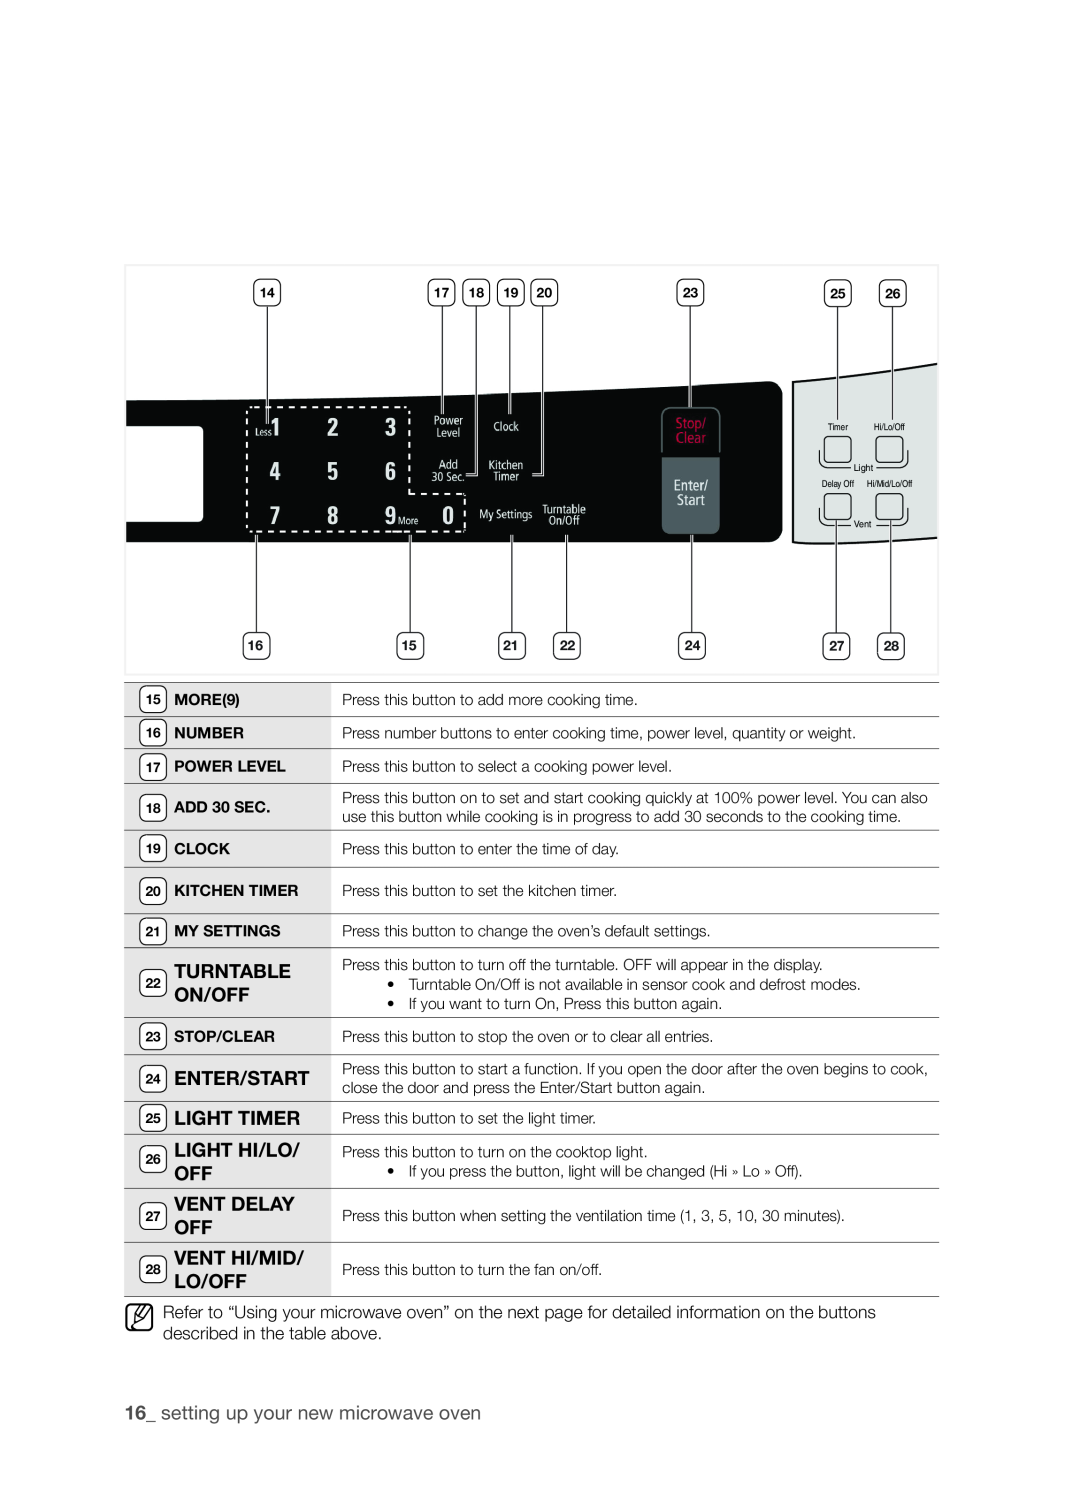 Samsung SMH9207ST user manual Turntable, On/Off, Enter/Start, Light Timer, Light Hi/Lo, Vent Delay, VENT HI/Mid, Lo/Off 